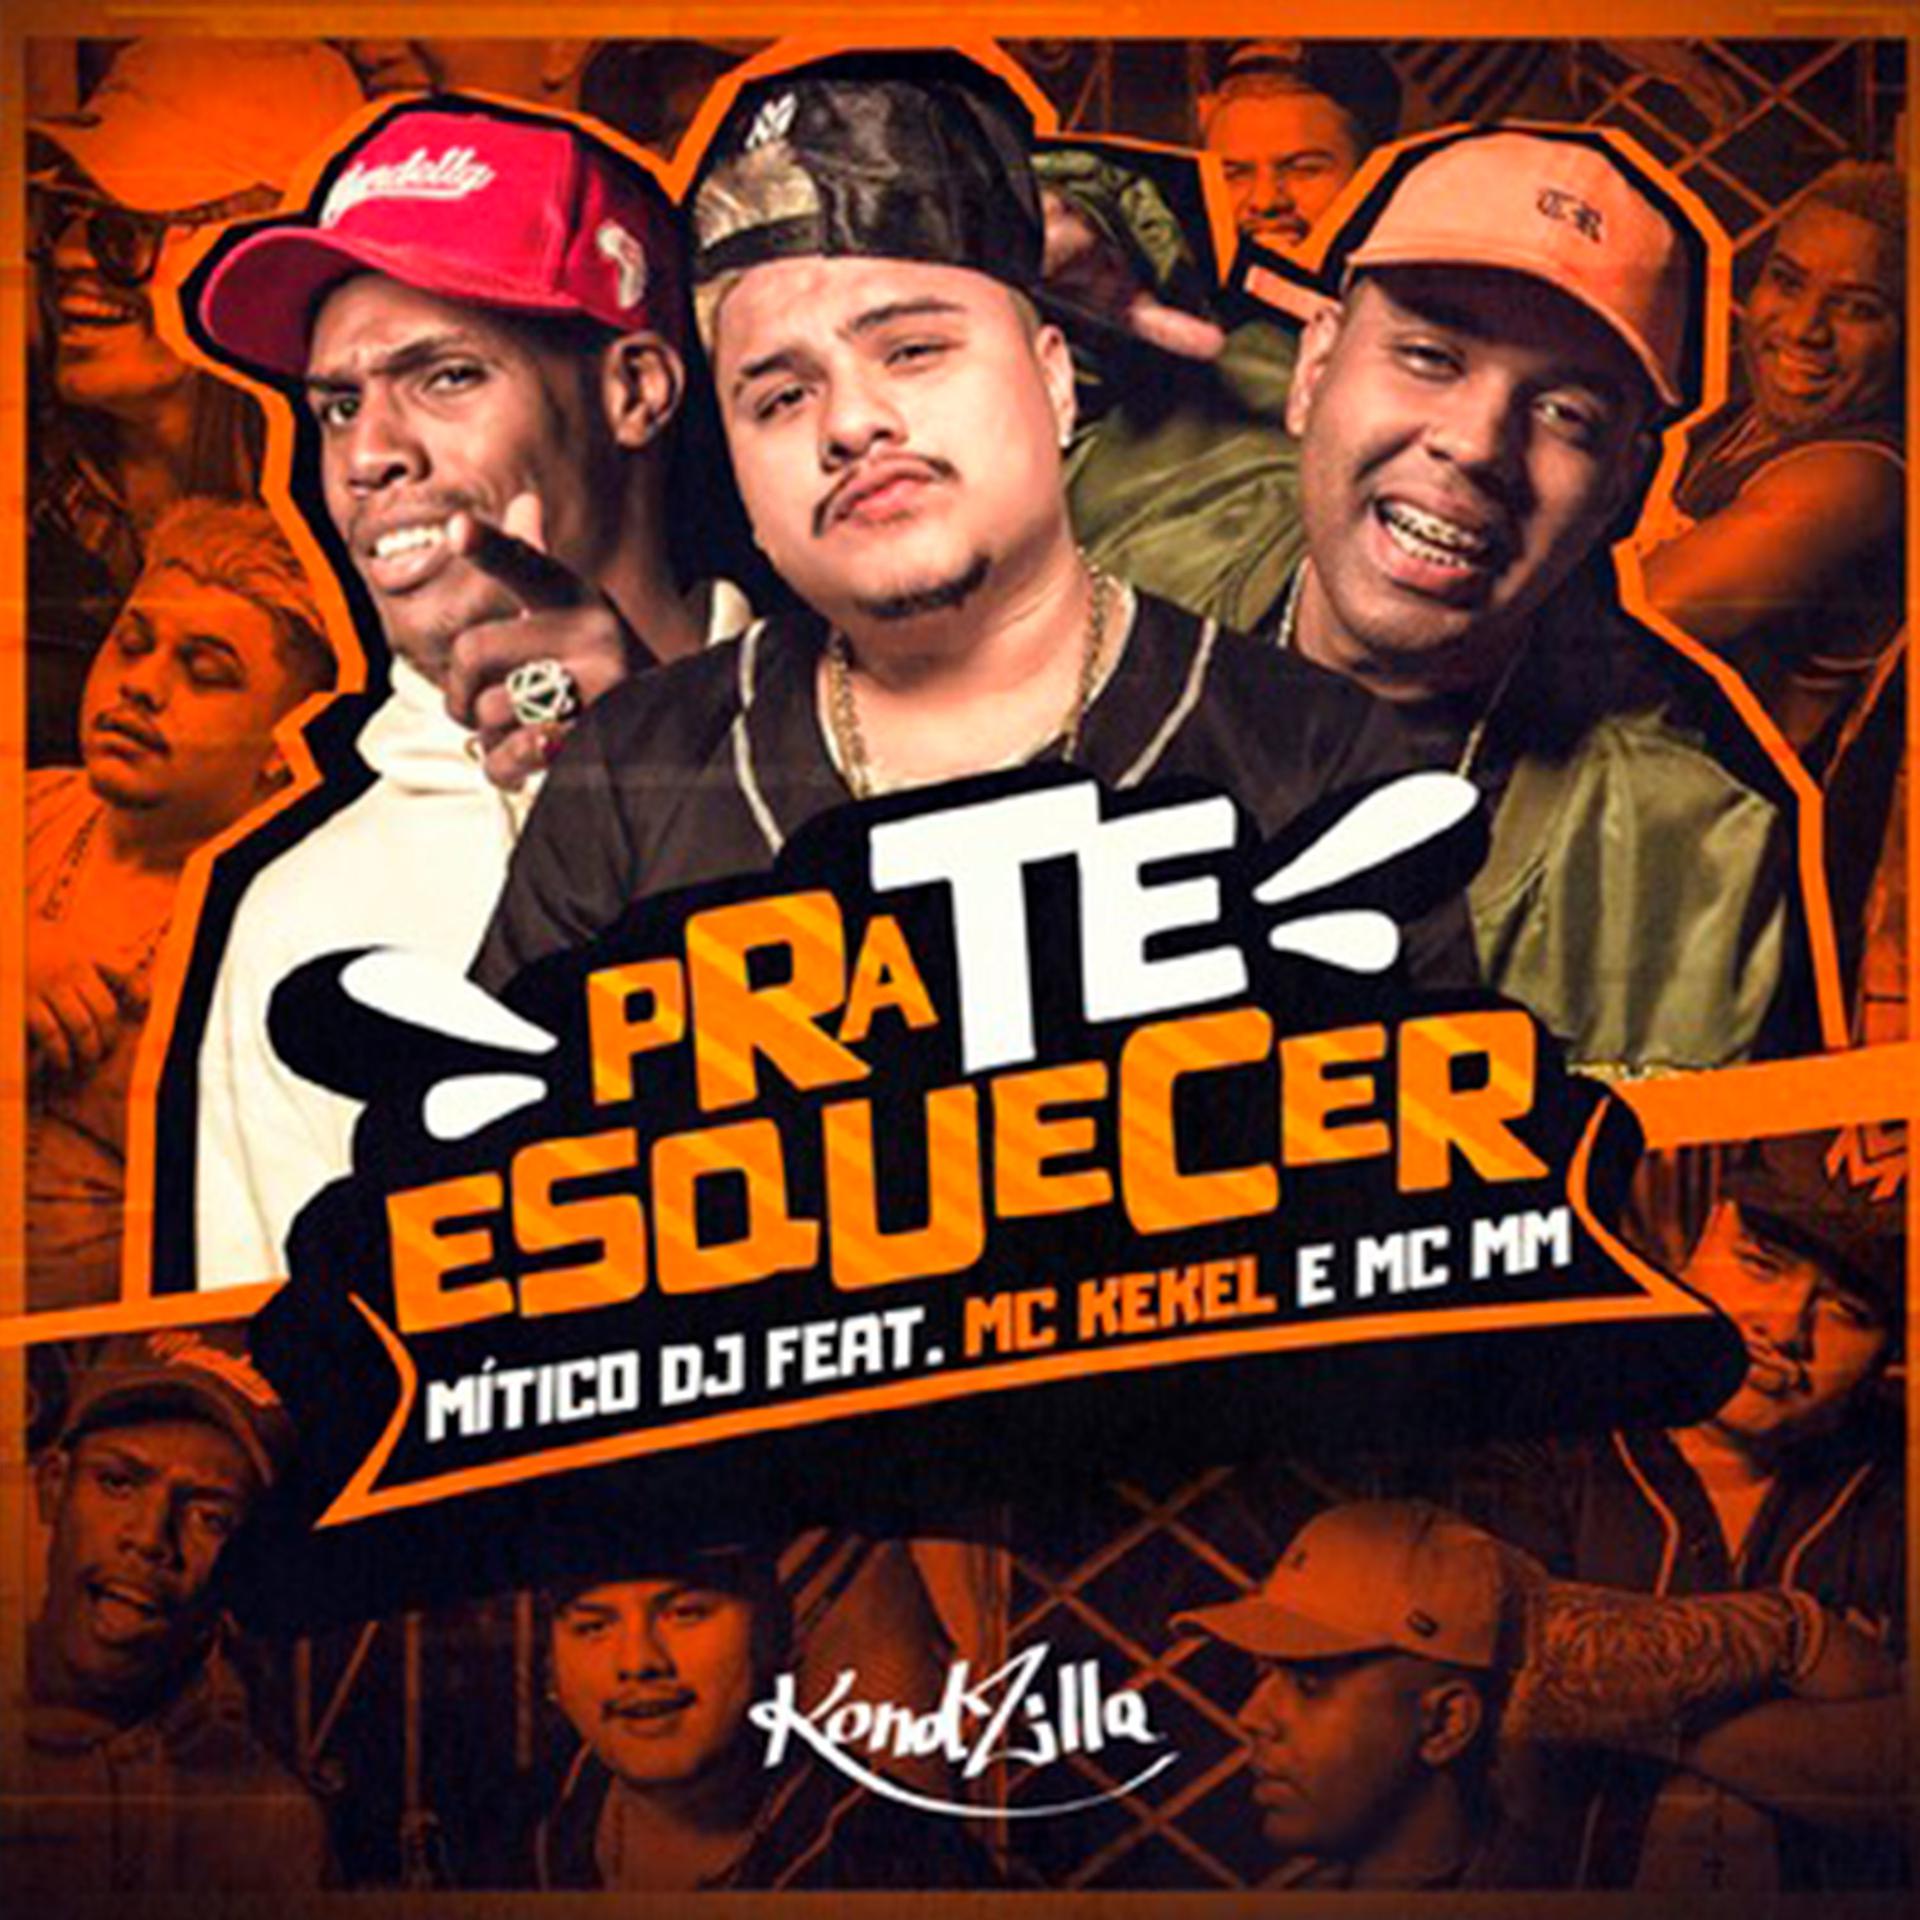 Постер альбома Pra Te Esquecer